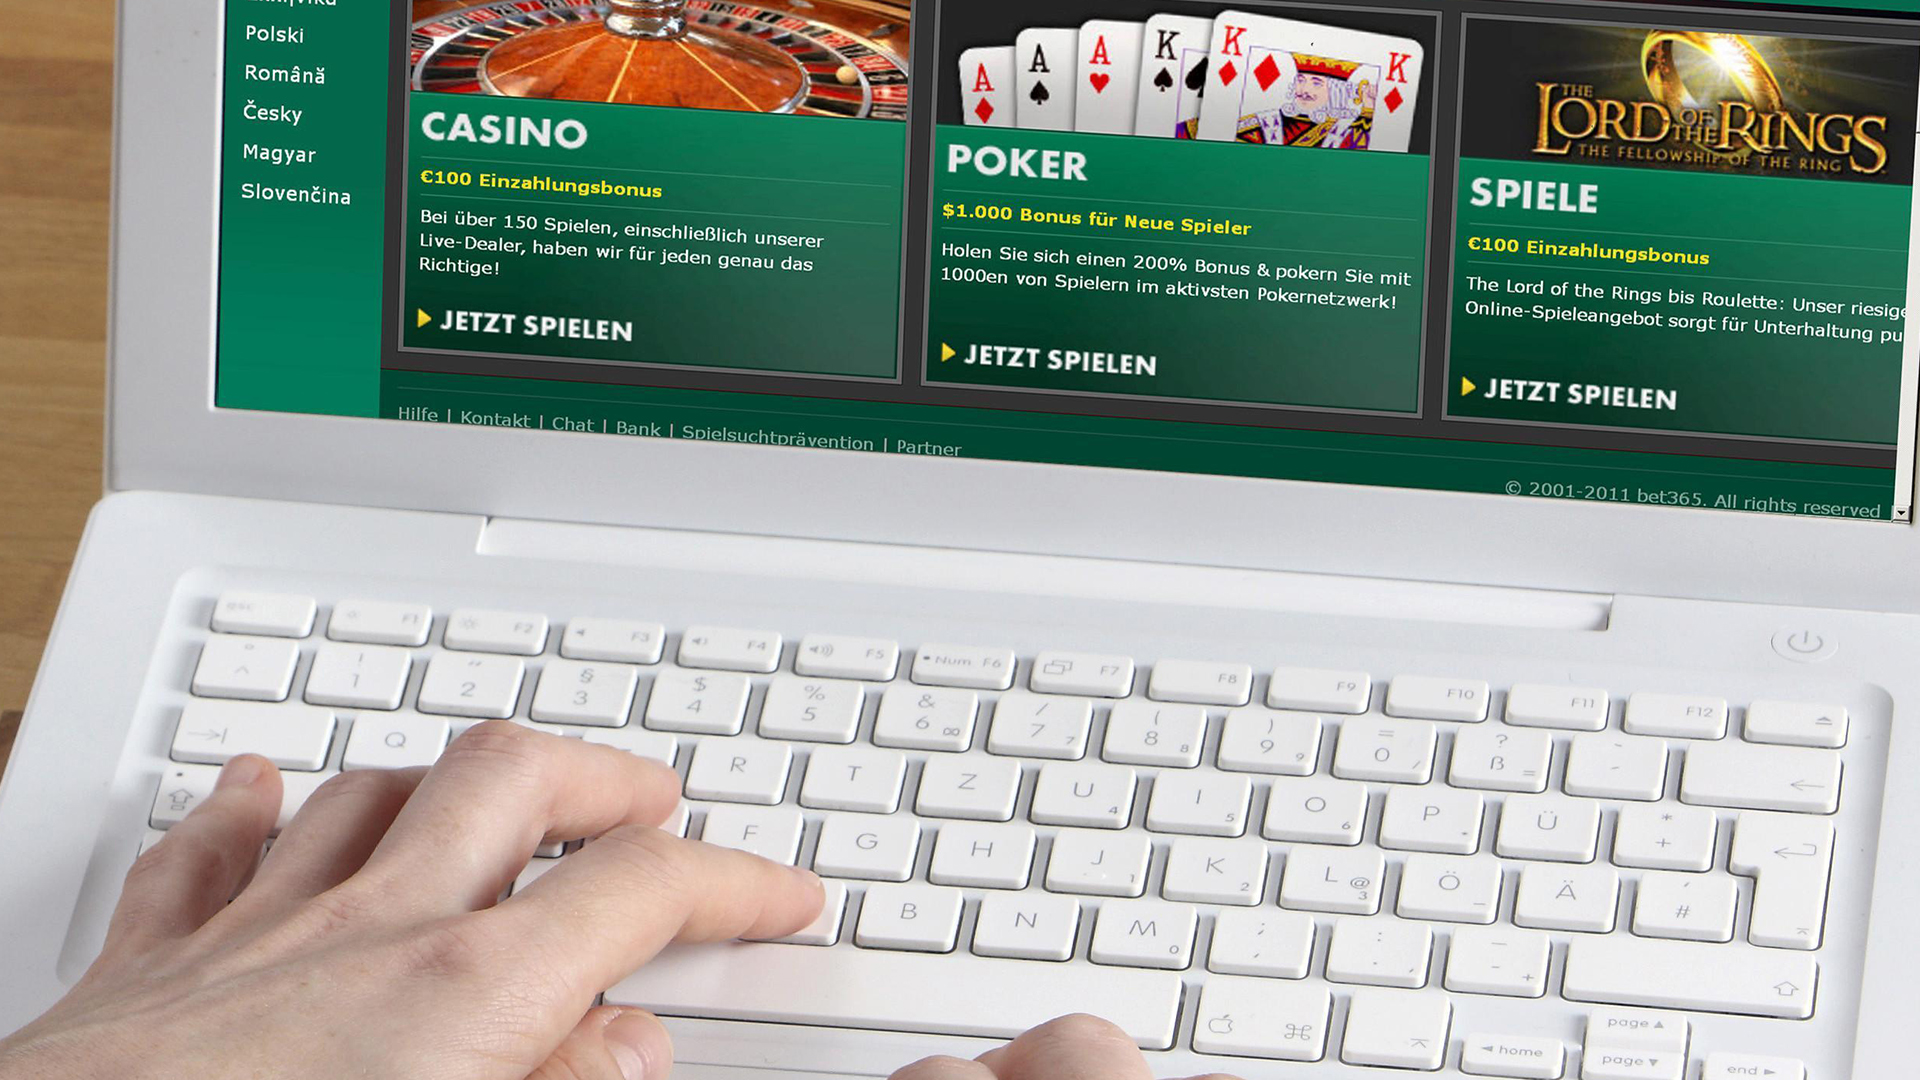 Online-Glücksspiele | picture alliance / imageBROKER